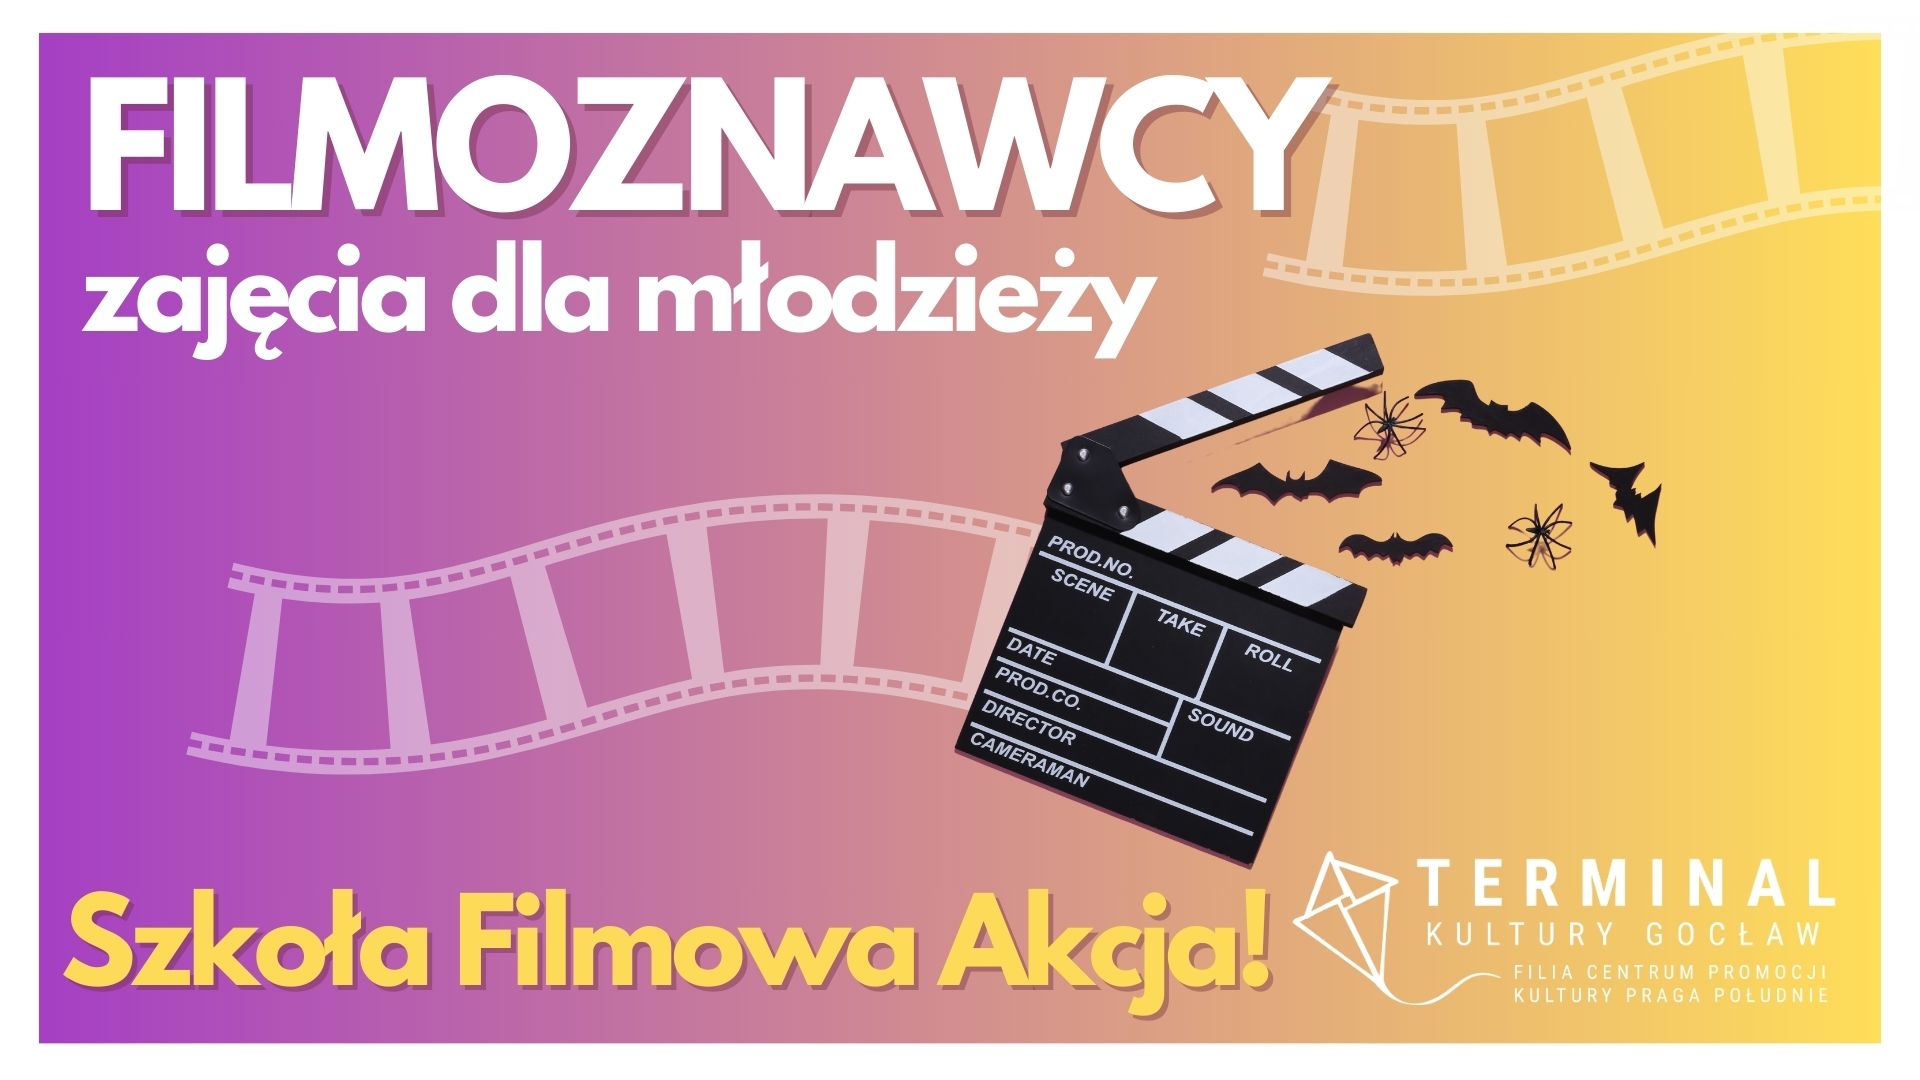 FILMOZNAWCY Szkoła Filmowa Akcja! dla młodzieży